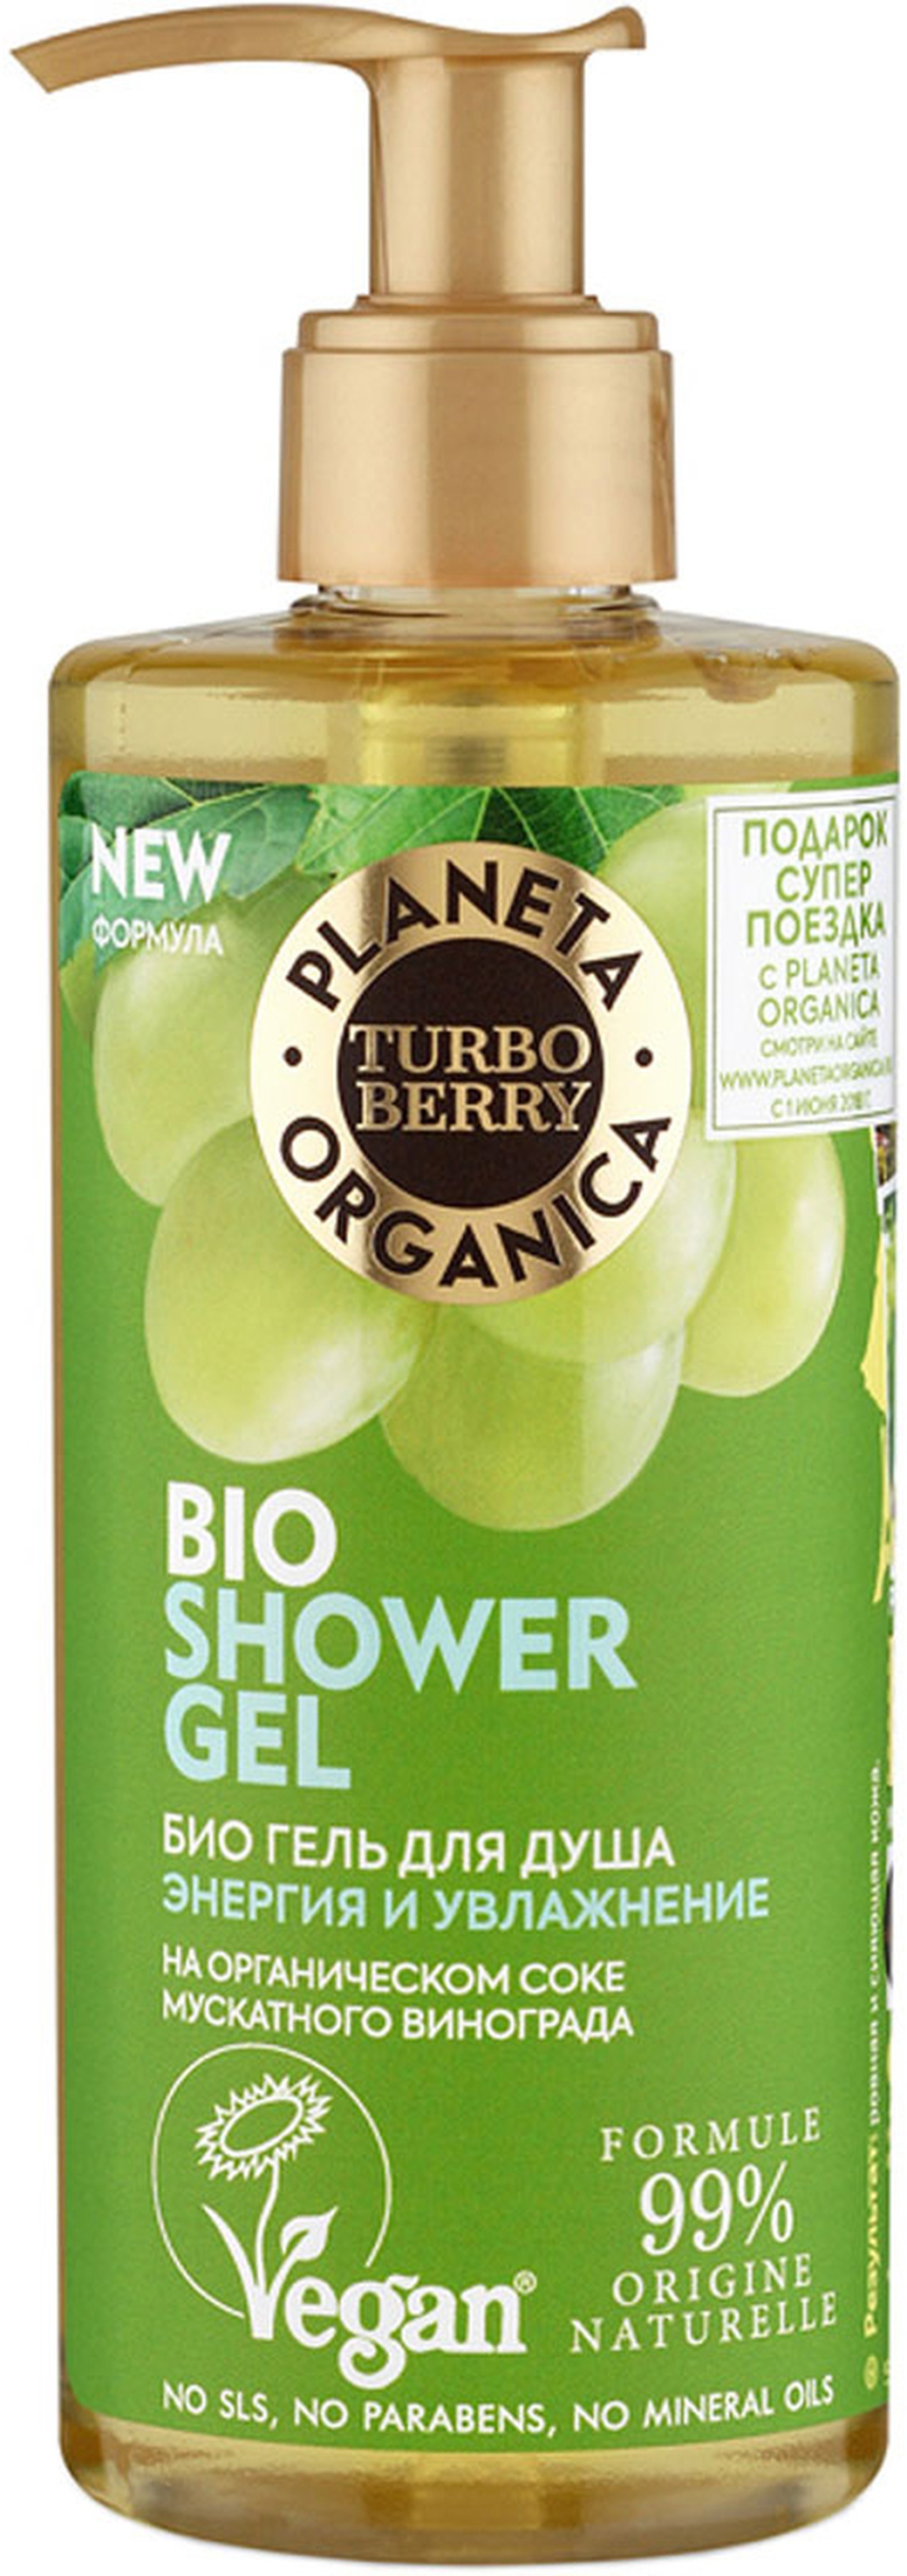 Planeta Organica Turbo Berry Био гель для душа Энергия и Увлажнение 300 мл фото